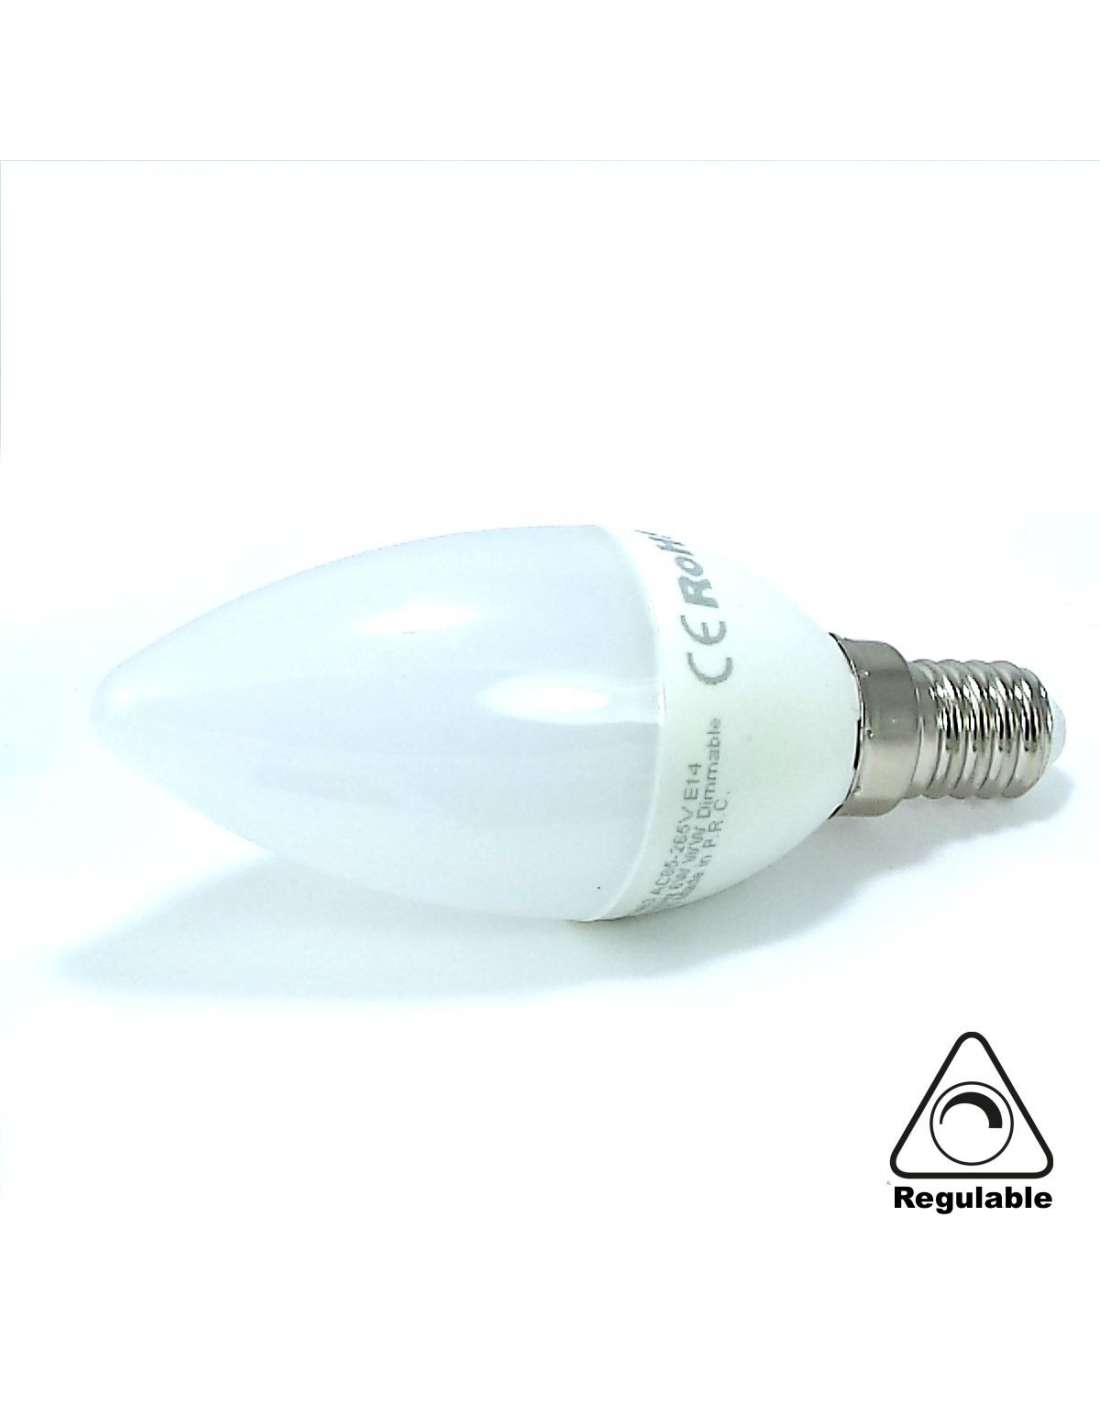 Foco LED Mini Vela Luz Cálida 5W E14